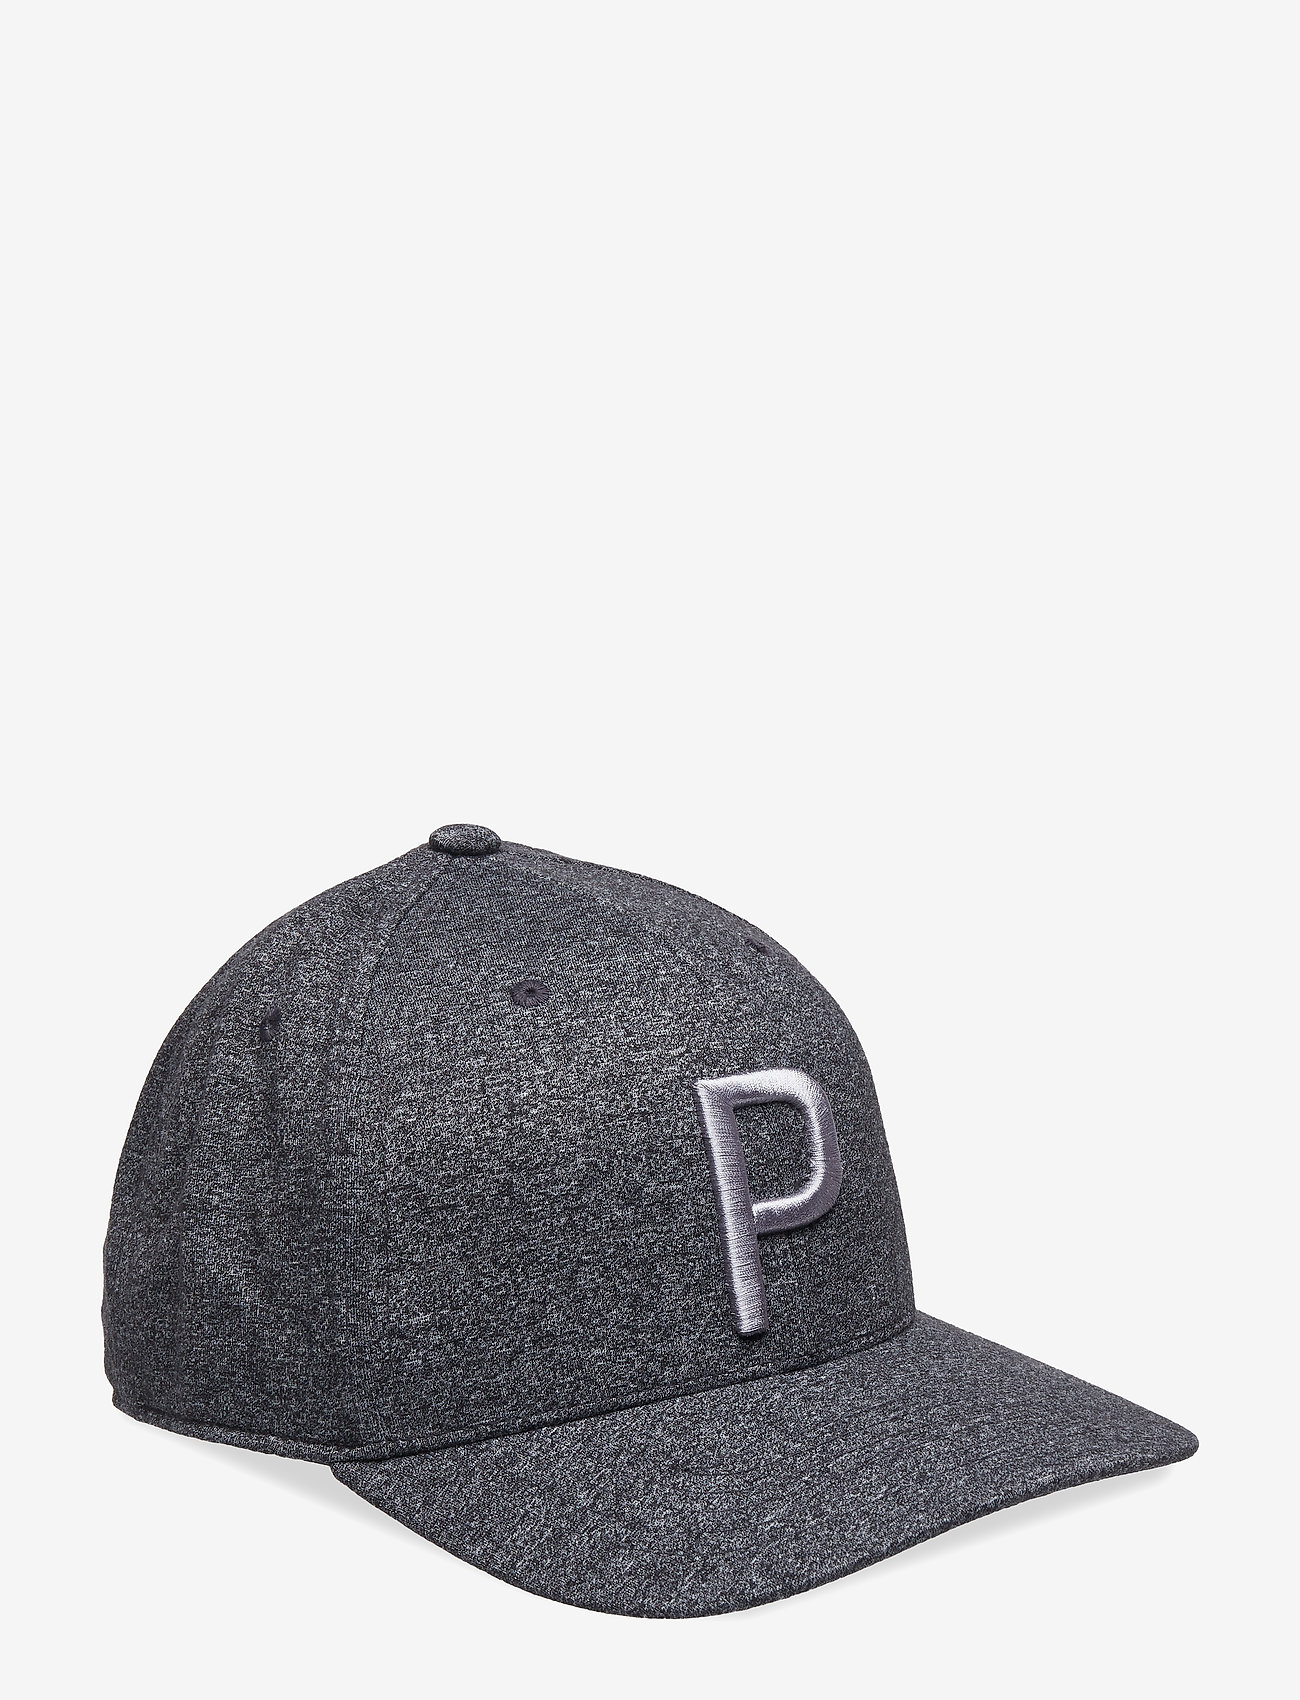 puma tour exclusive hat